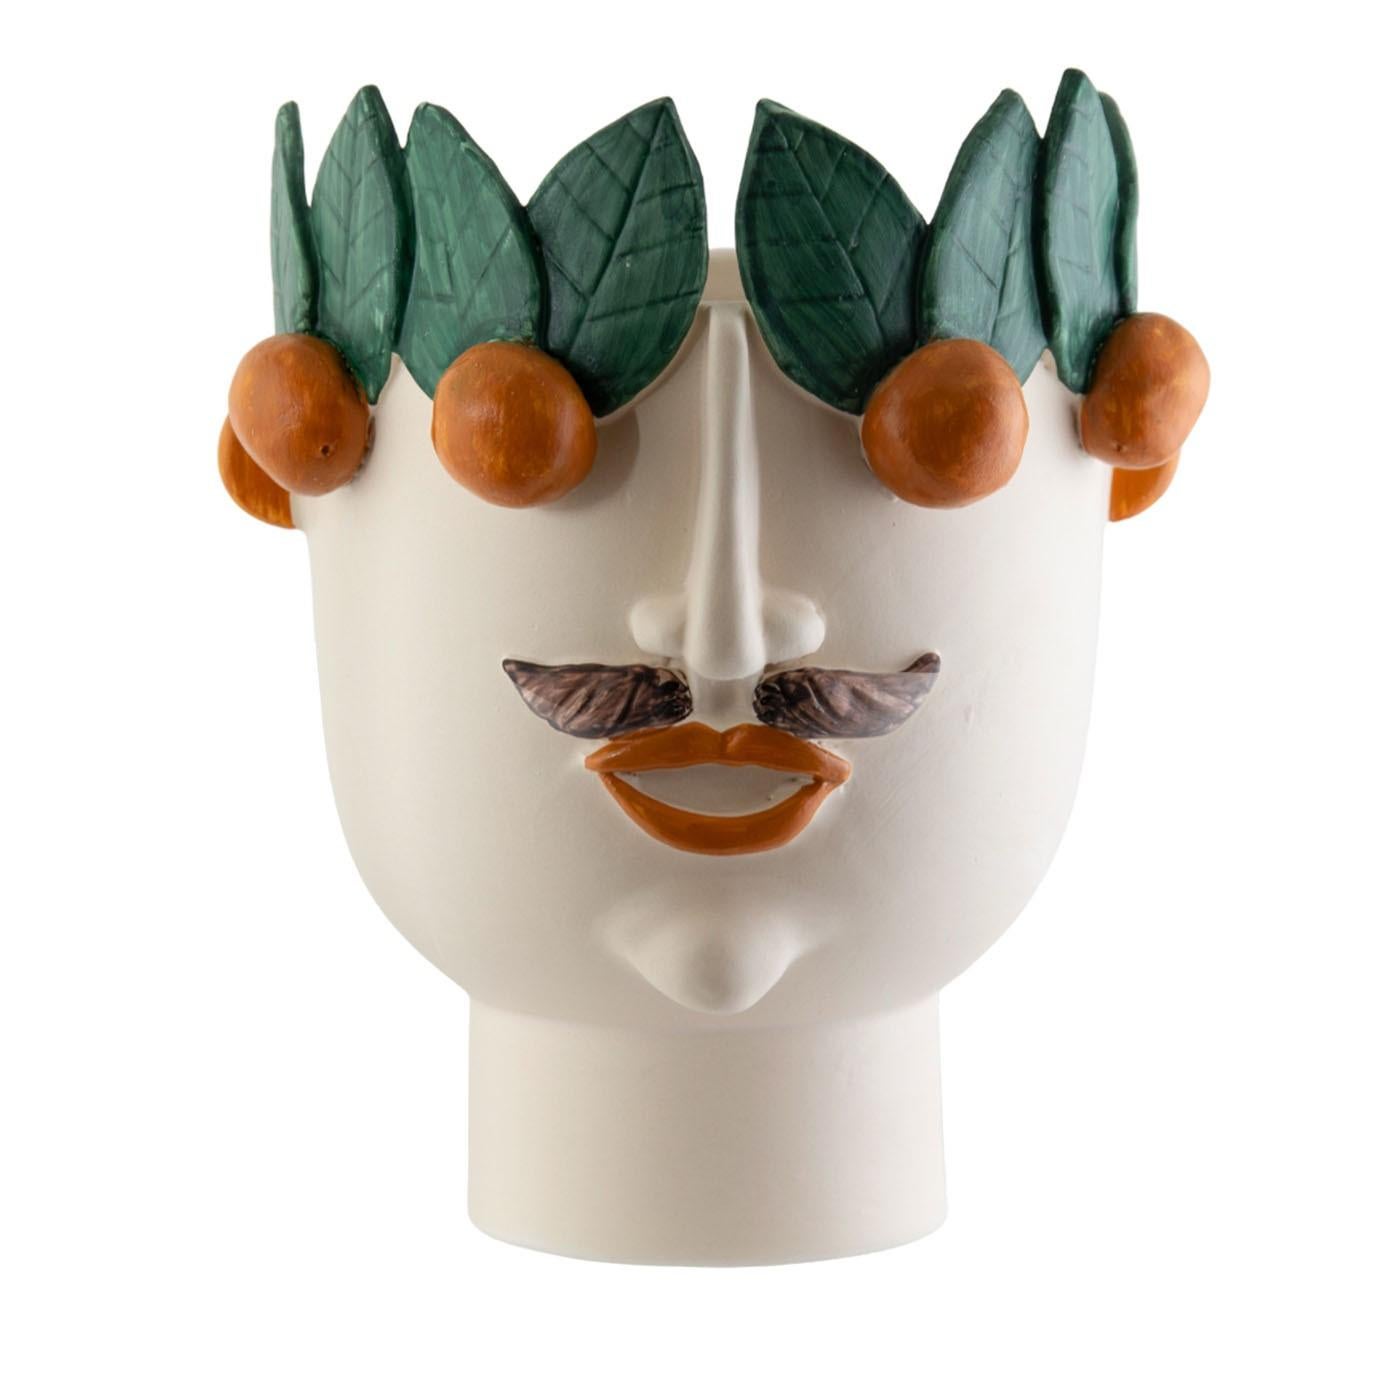 Ceramic Calogero Seller Of Mandarins For Sale